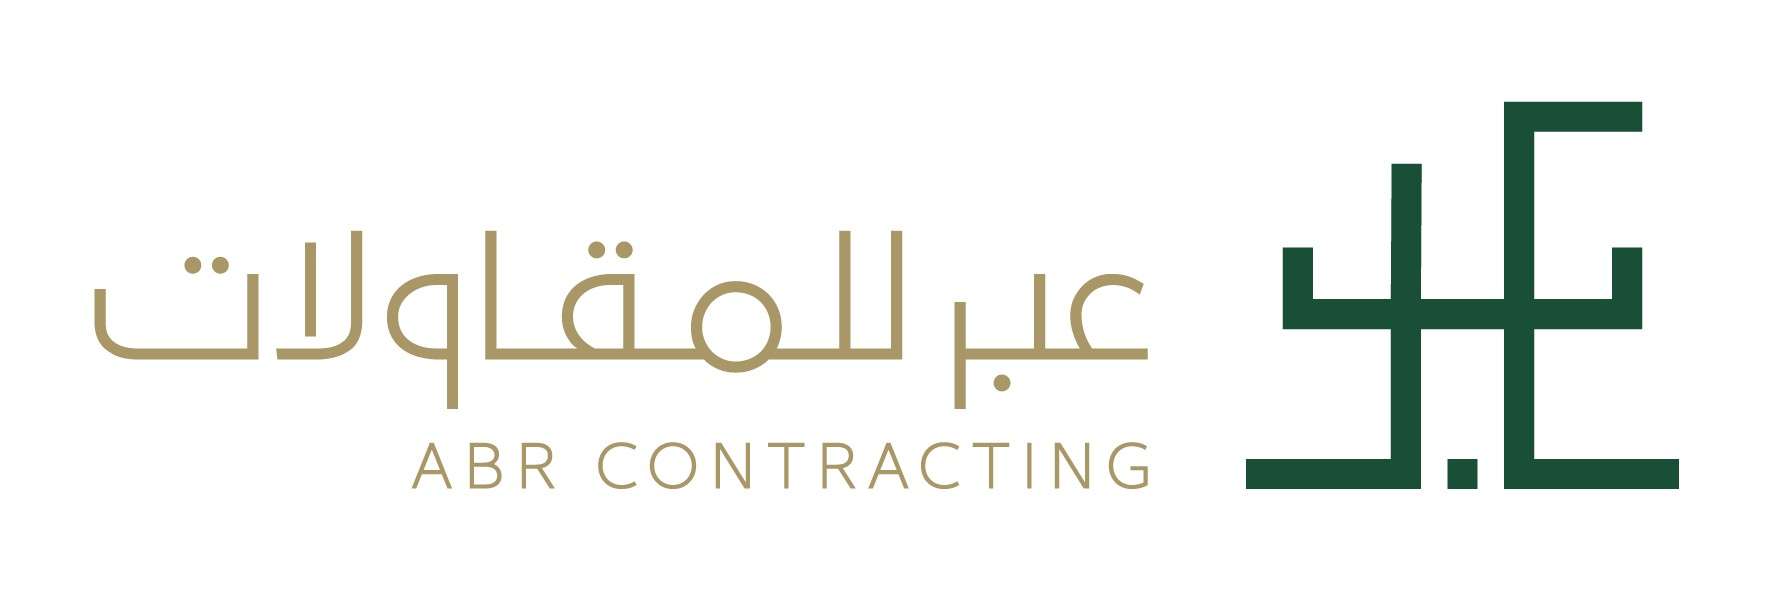 ABR Contracting Job Vacancies - Riyadh, Saudi Arabia